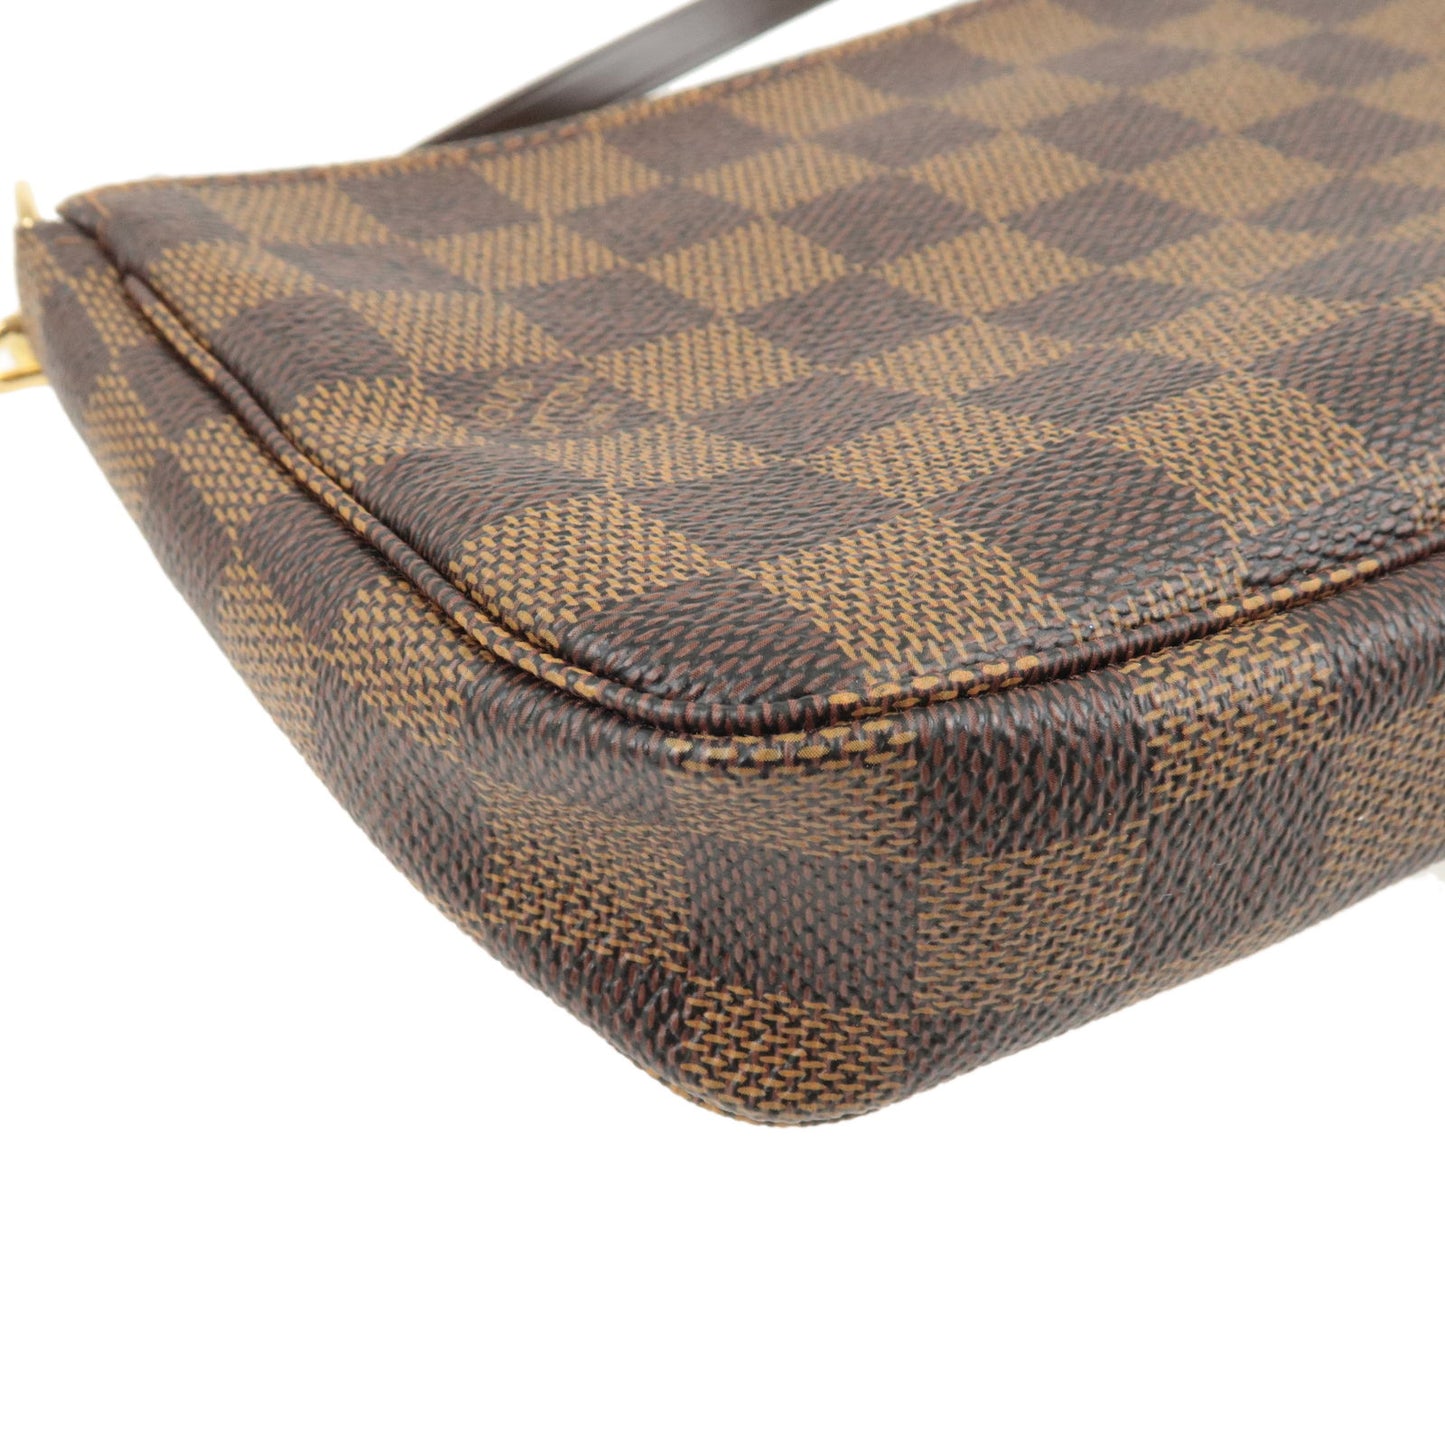 Louis Vuitton Pochette Accessoires Damier Ebene Shoulder Bag Clutch N51985